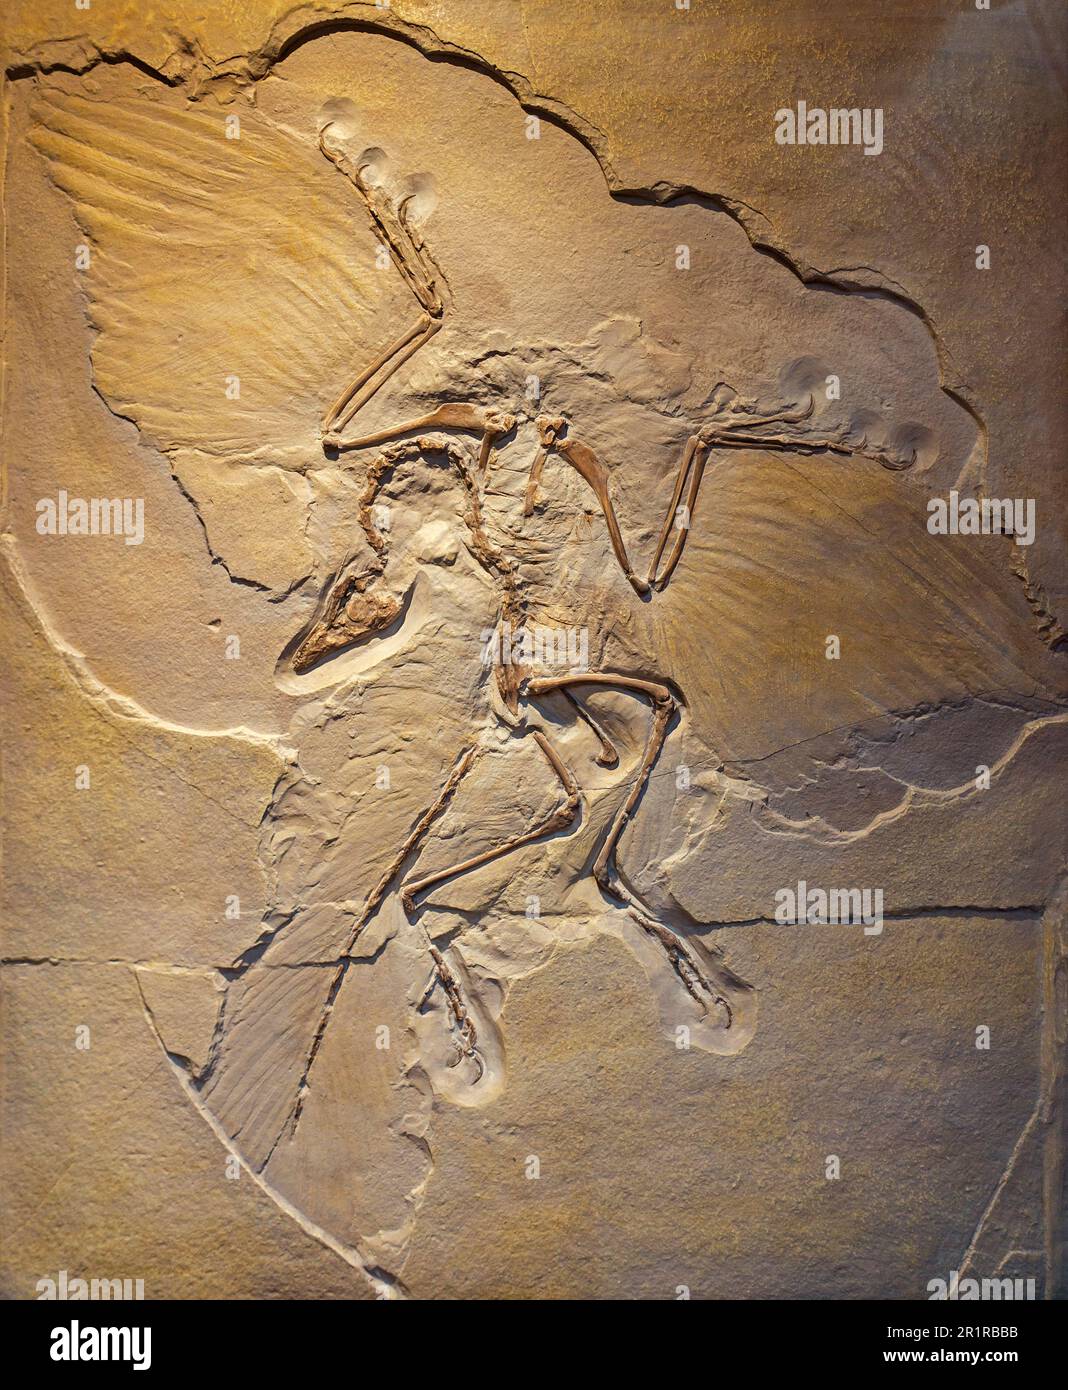 Urvogel, esemplare di Archaeopteryx di Berlino (Archaeopteryx siemensii), replica del fossile di transizione del dinosauro simile ad un uccello, tardo giurassico Foto Stock